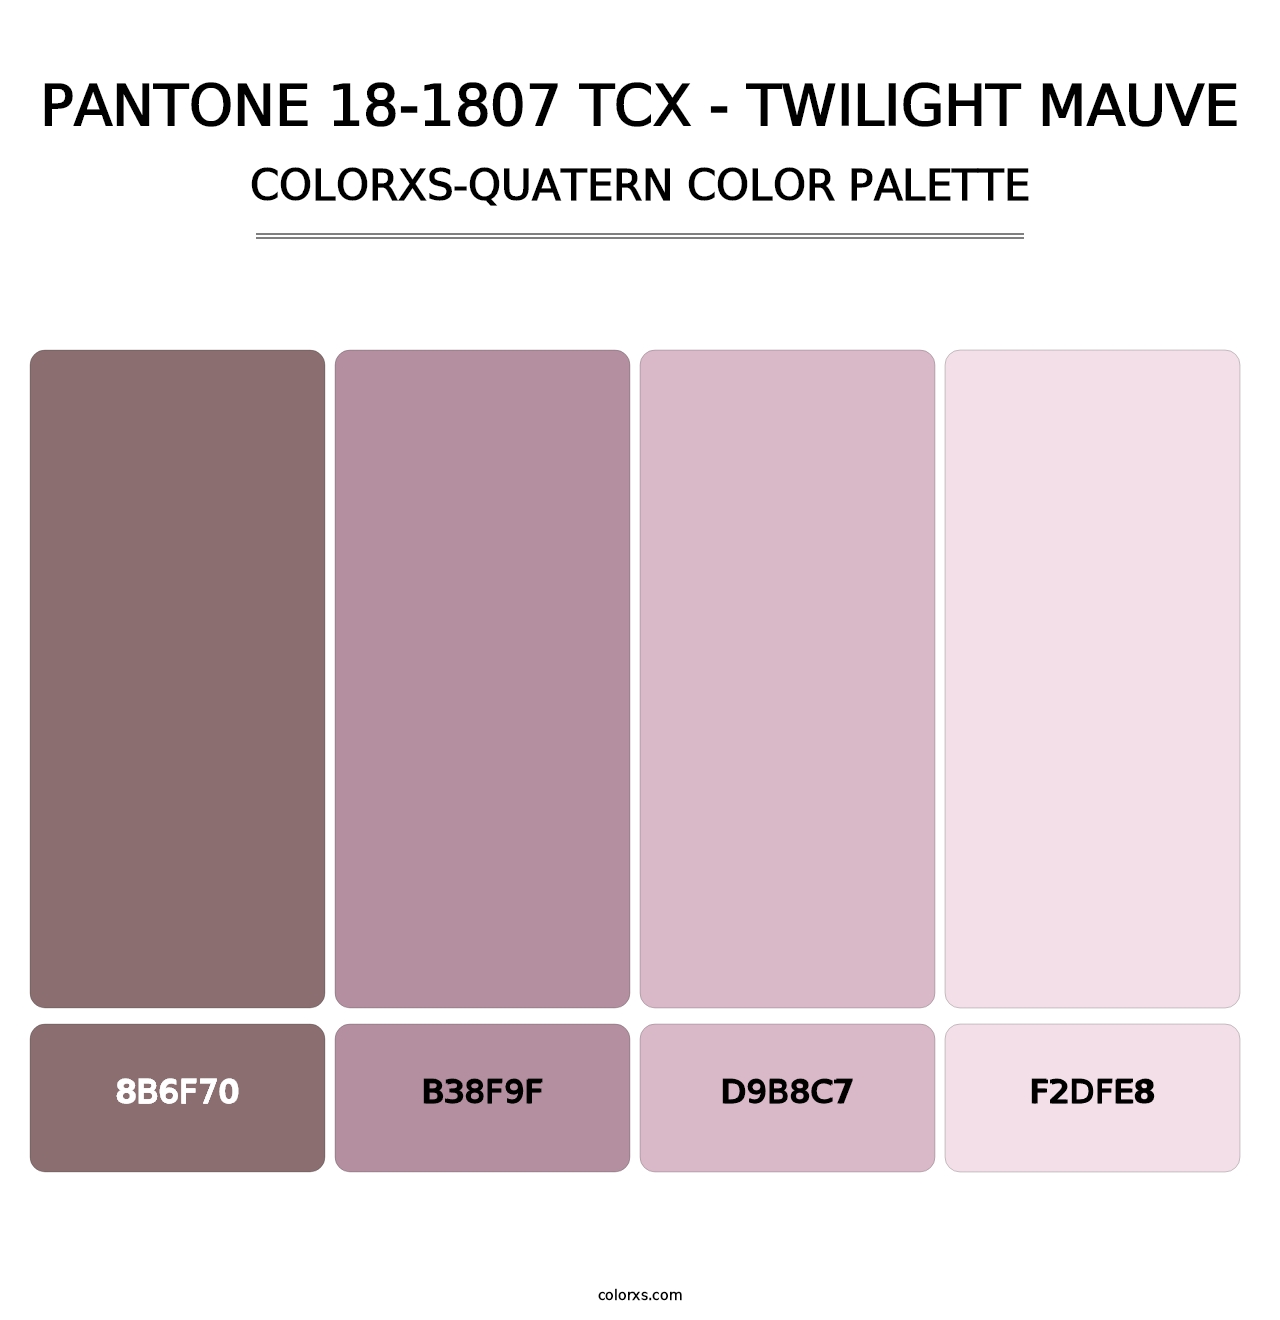 PANTONE 18-1807 TCX - Twilight Mauve - Colorxs Quatern Palette